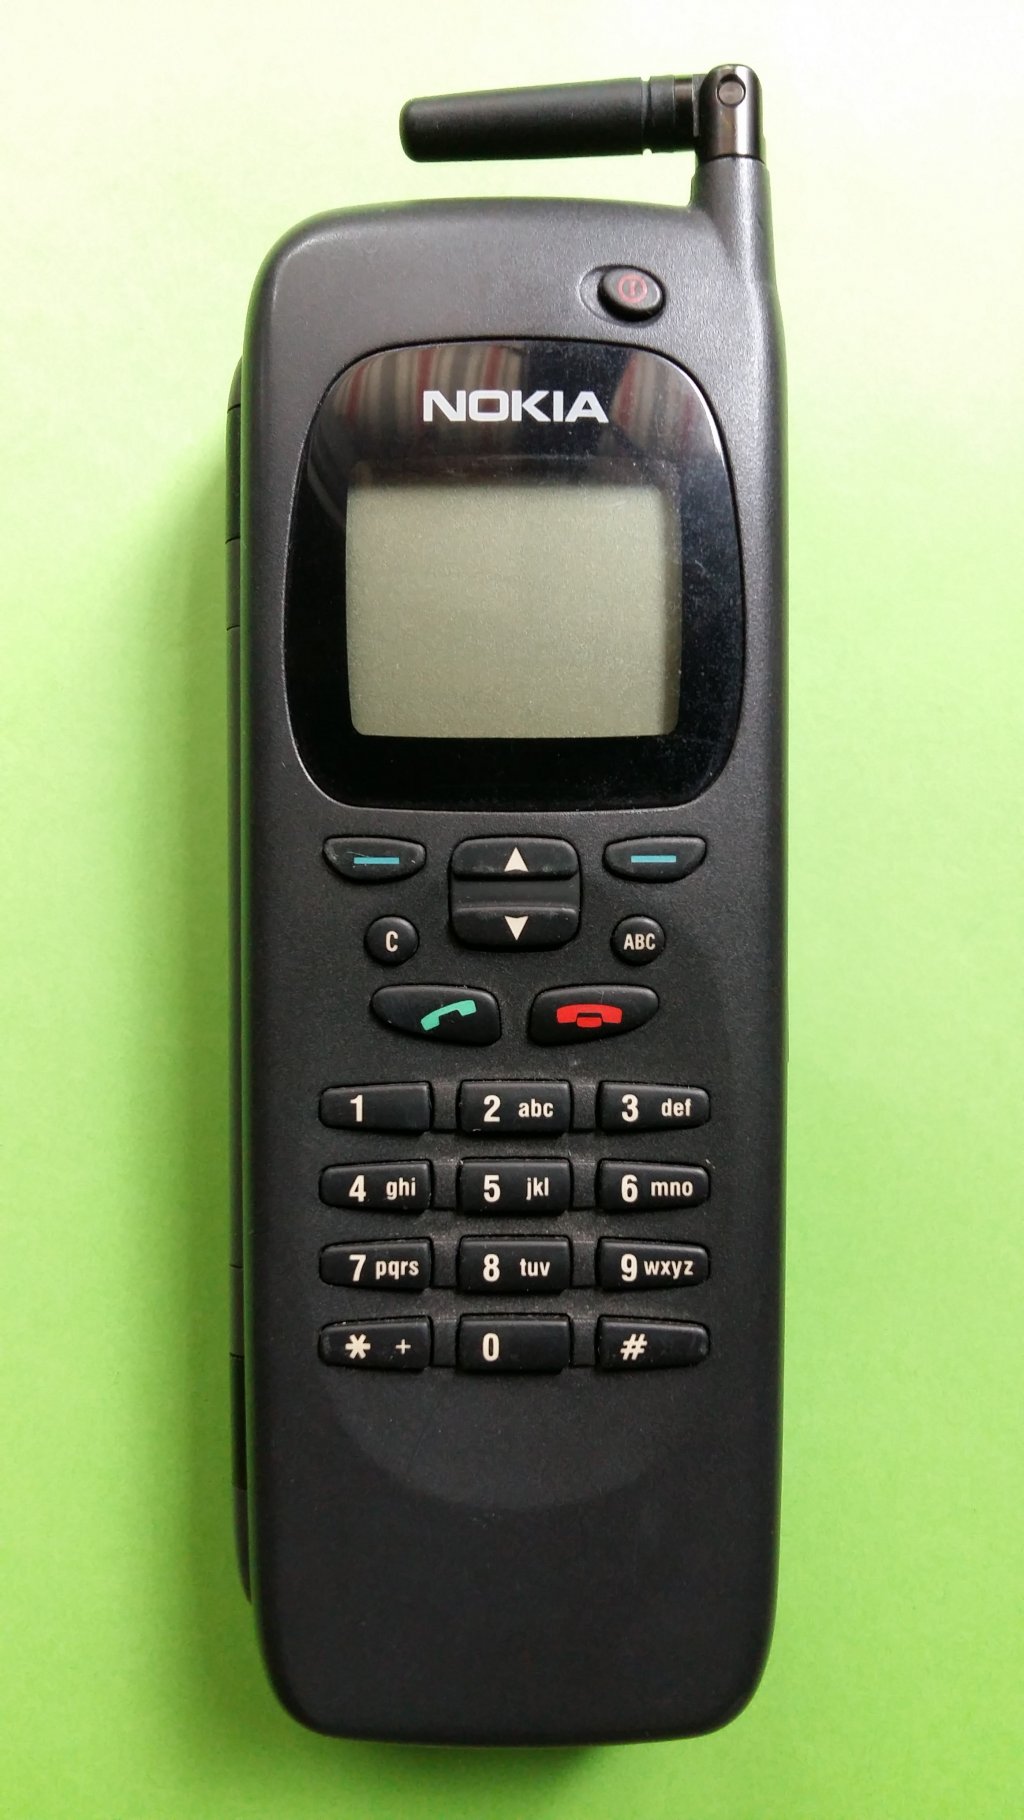 image-9131963-Nokia_9000i_Communicator_(1)1.w640.jpg